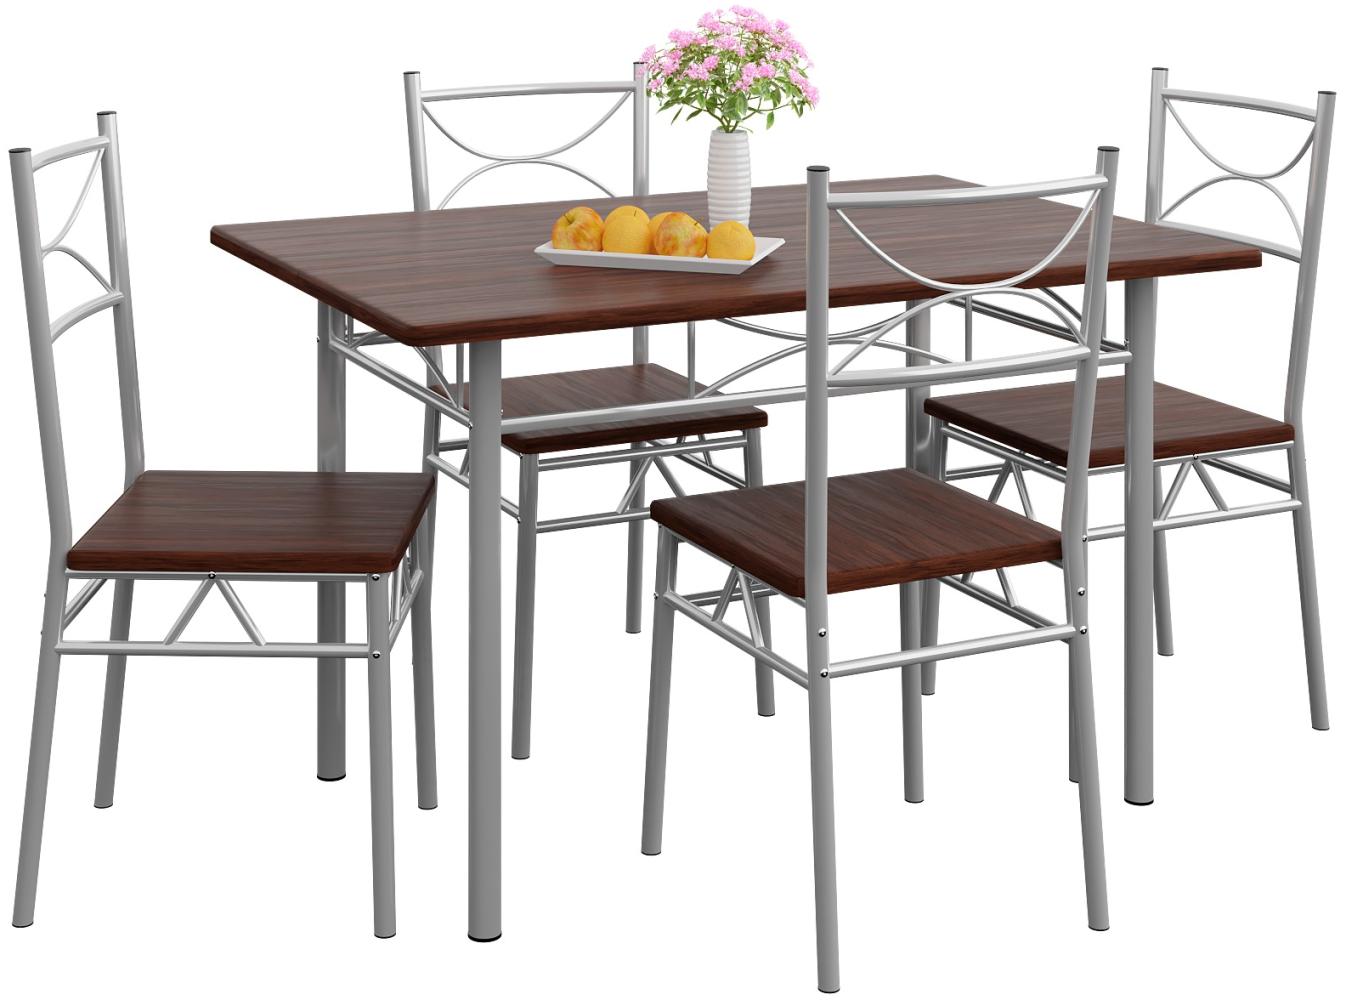 Casaria Esstisch Küchentisch mit 4 Stühlen Esszimmergruppe Essgruppe Küche Tisch Stuhl Set Eiche dunkel Bild 1